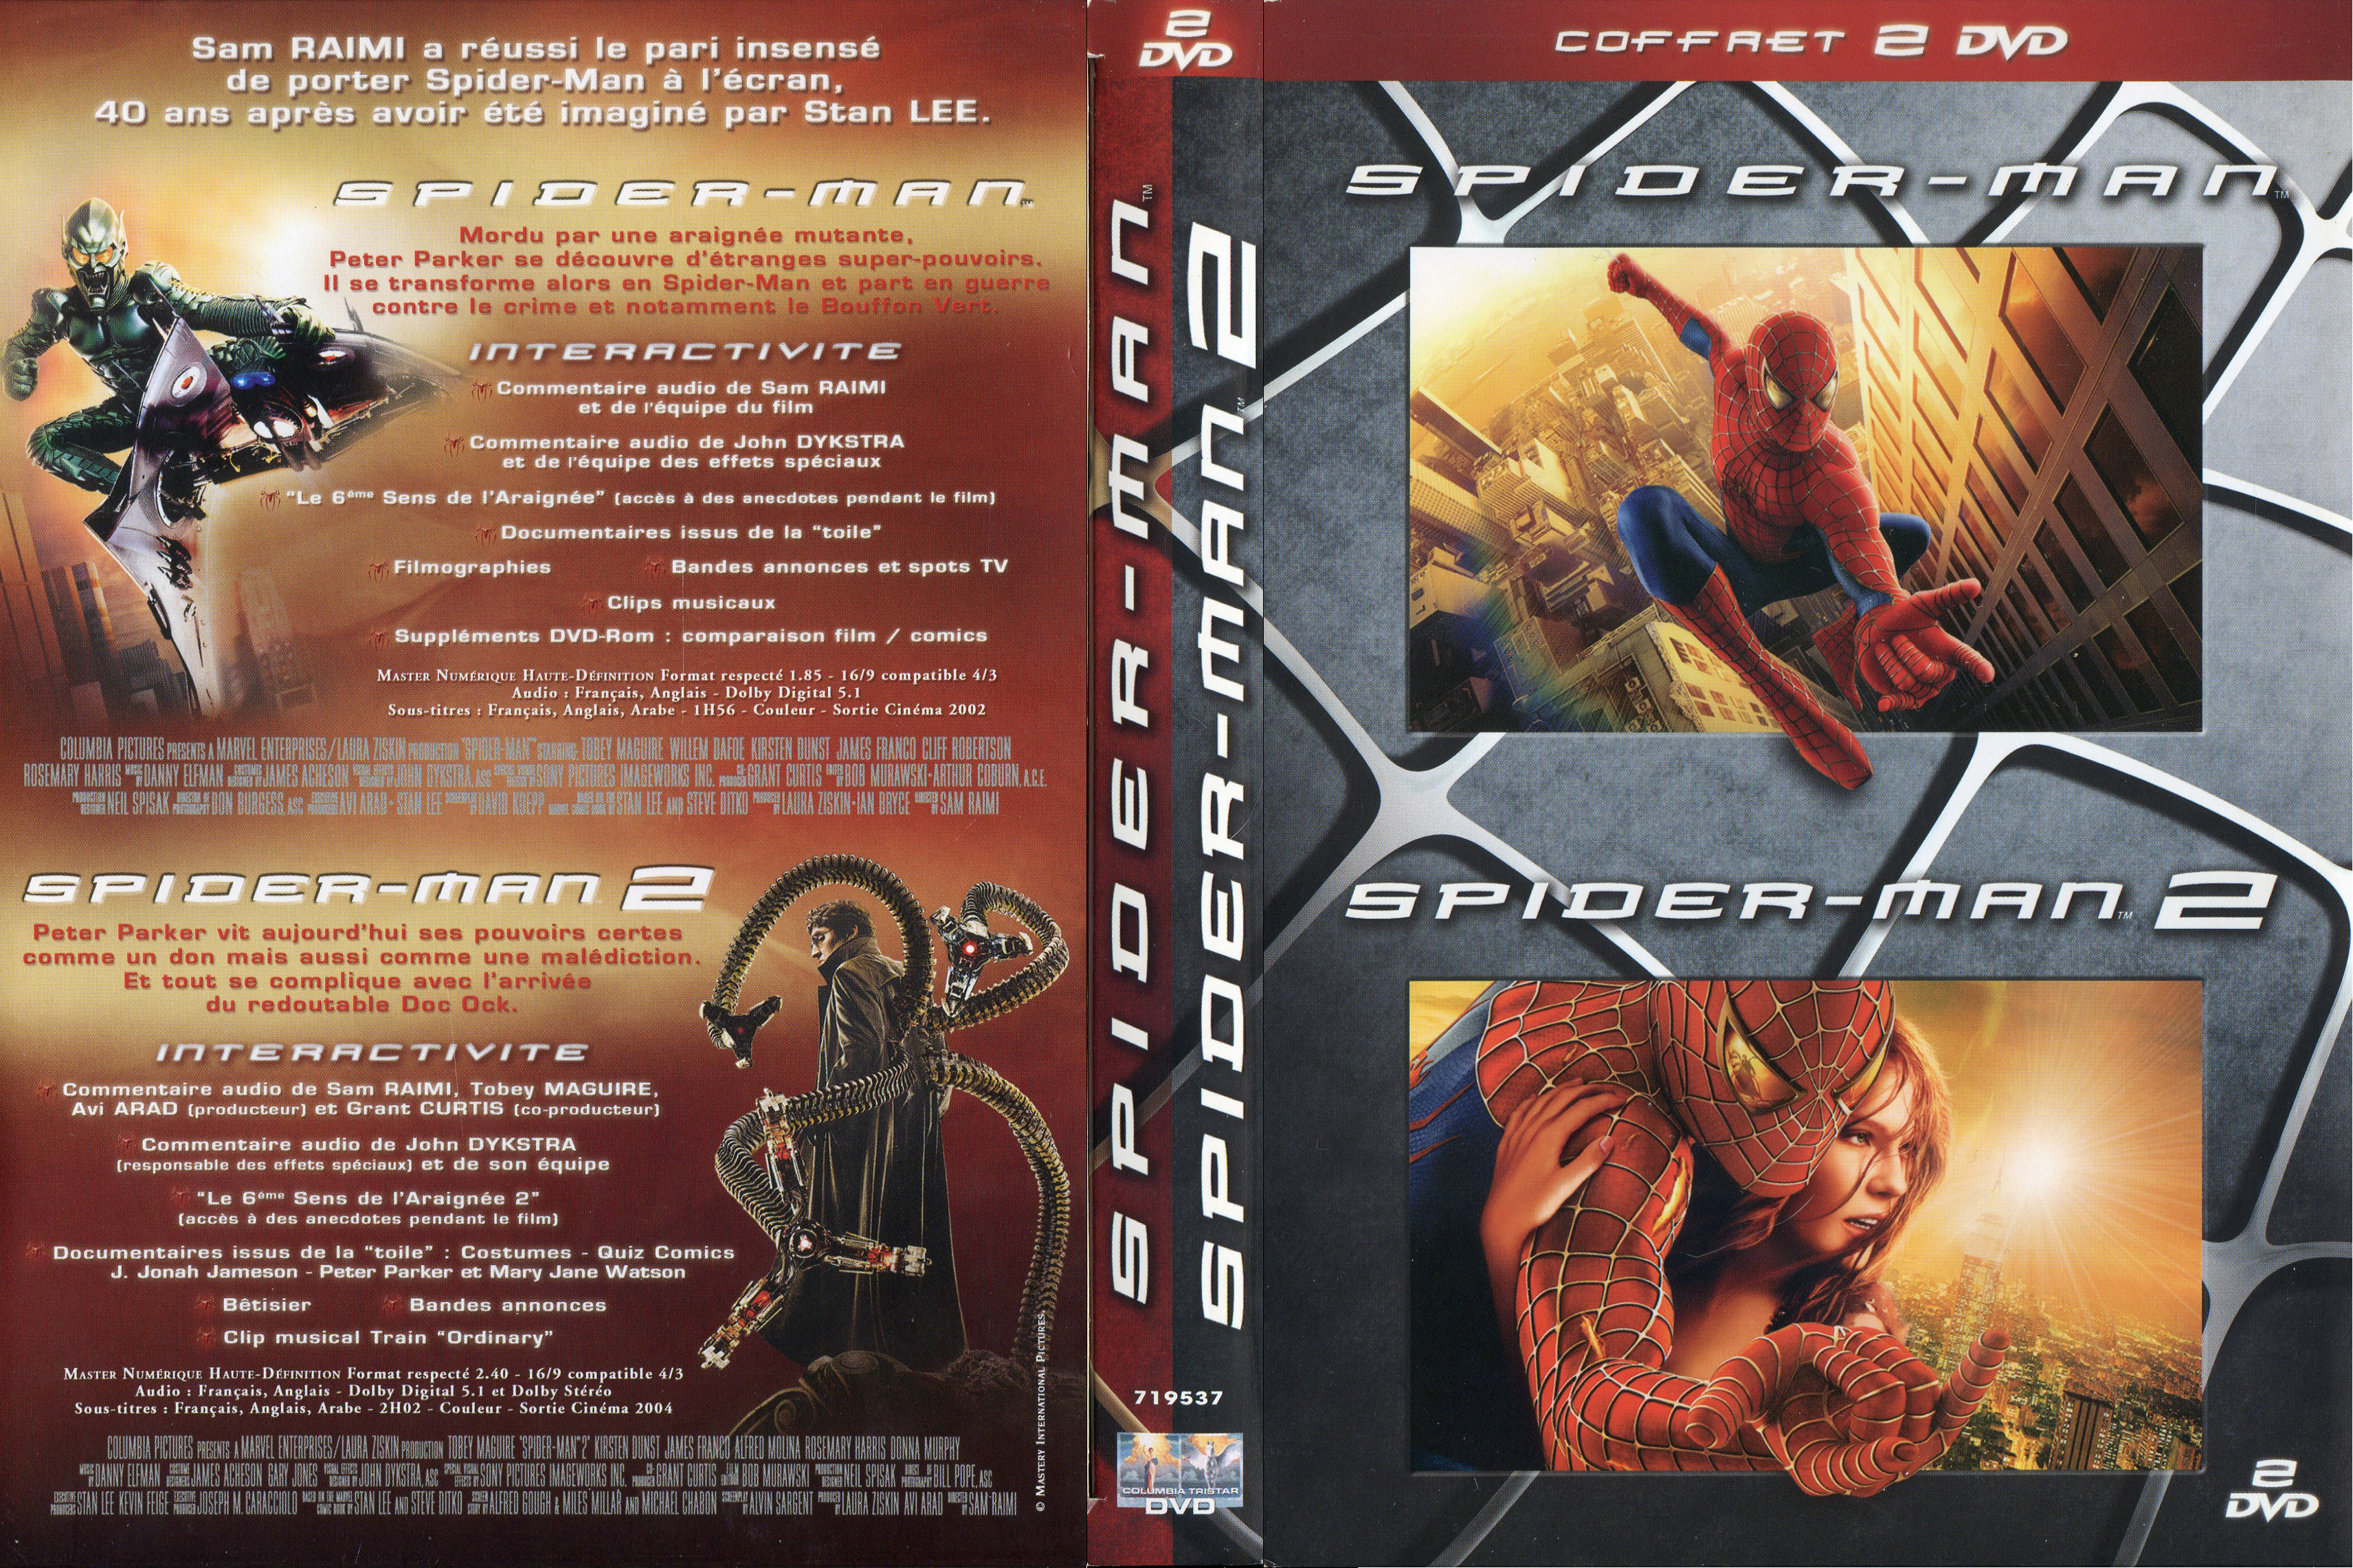 Jaquette DVD Spiderman 1 et 2